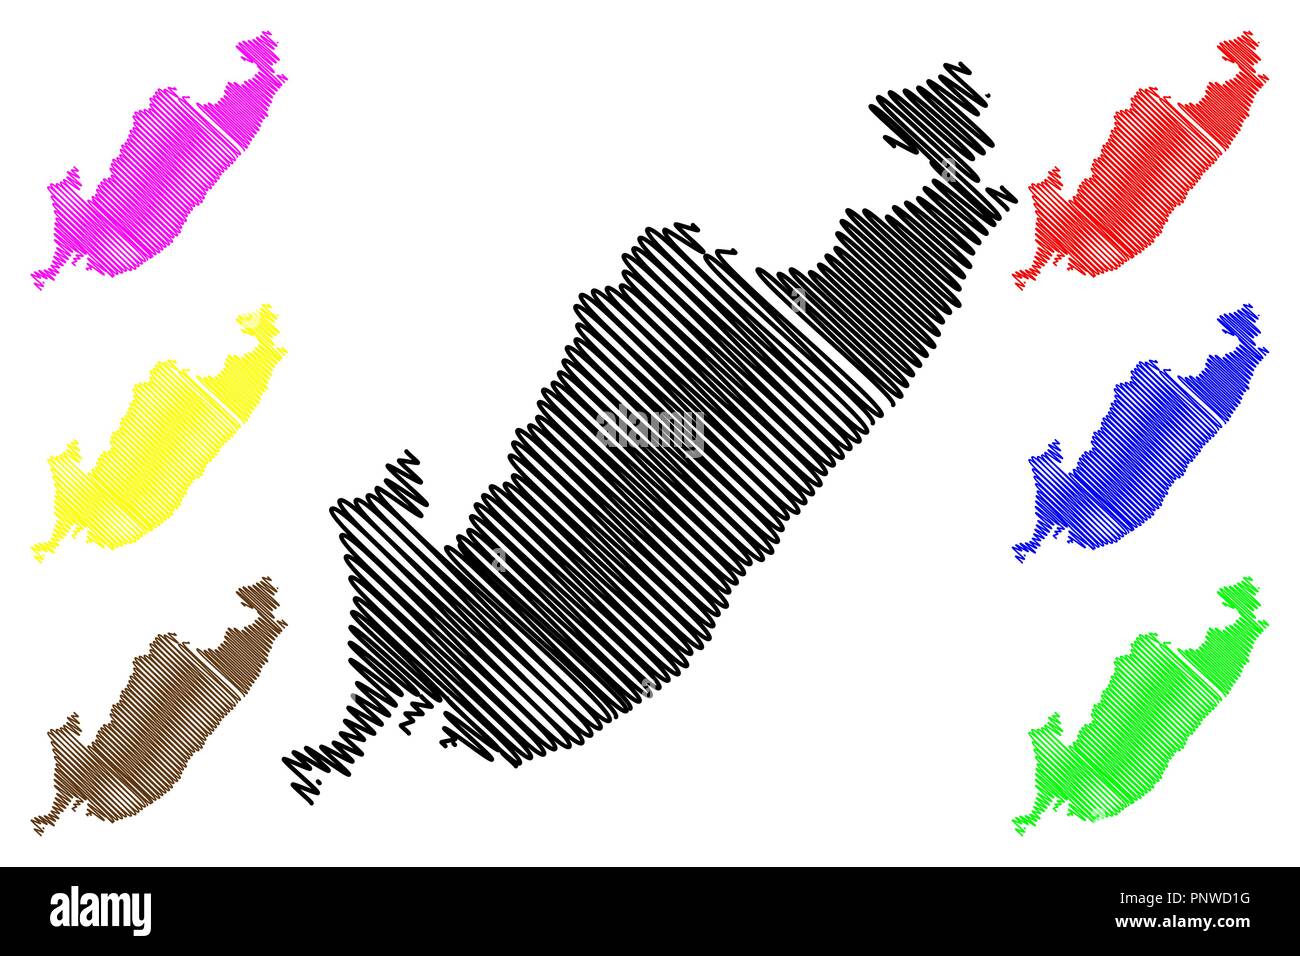 Flandre orientale (Russie, Sujets de la Fédération de Russie, de la Russie) carte Krais illustration vectorielle, scribble croquis Territoire maritime (Primorye) ma Illustration de Vecteur